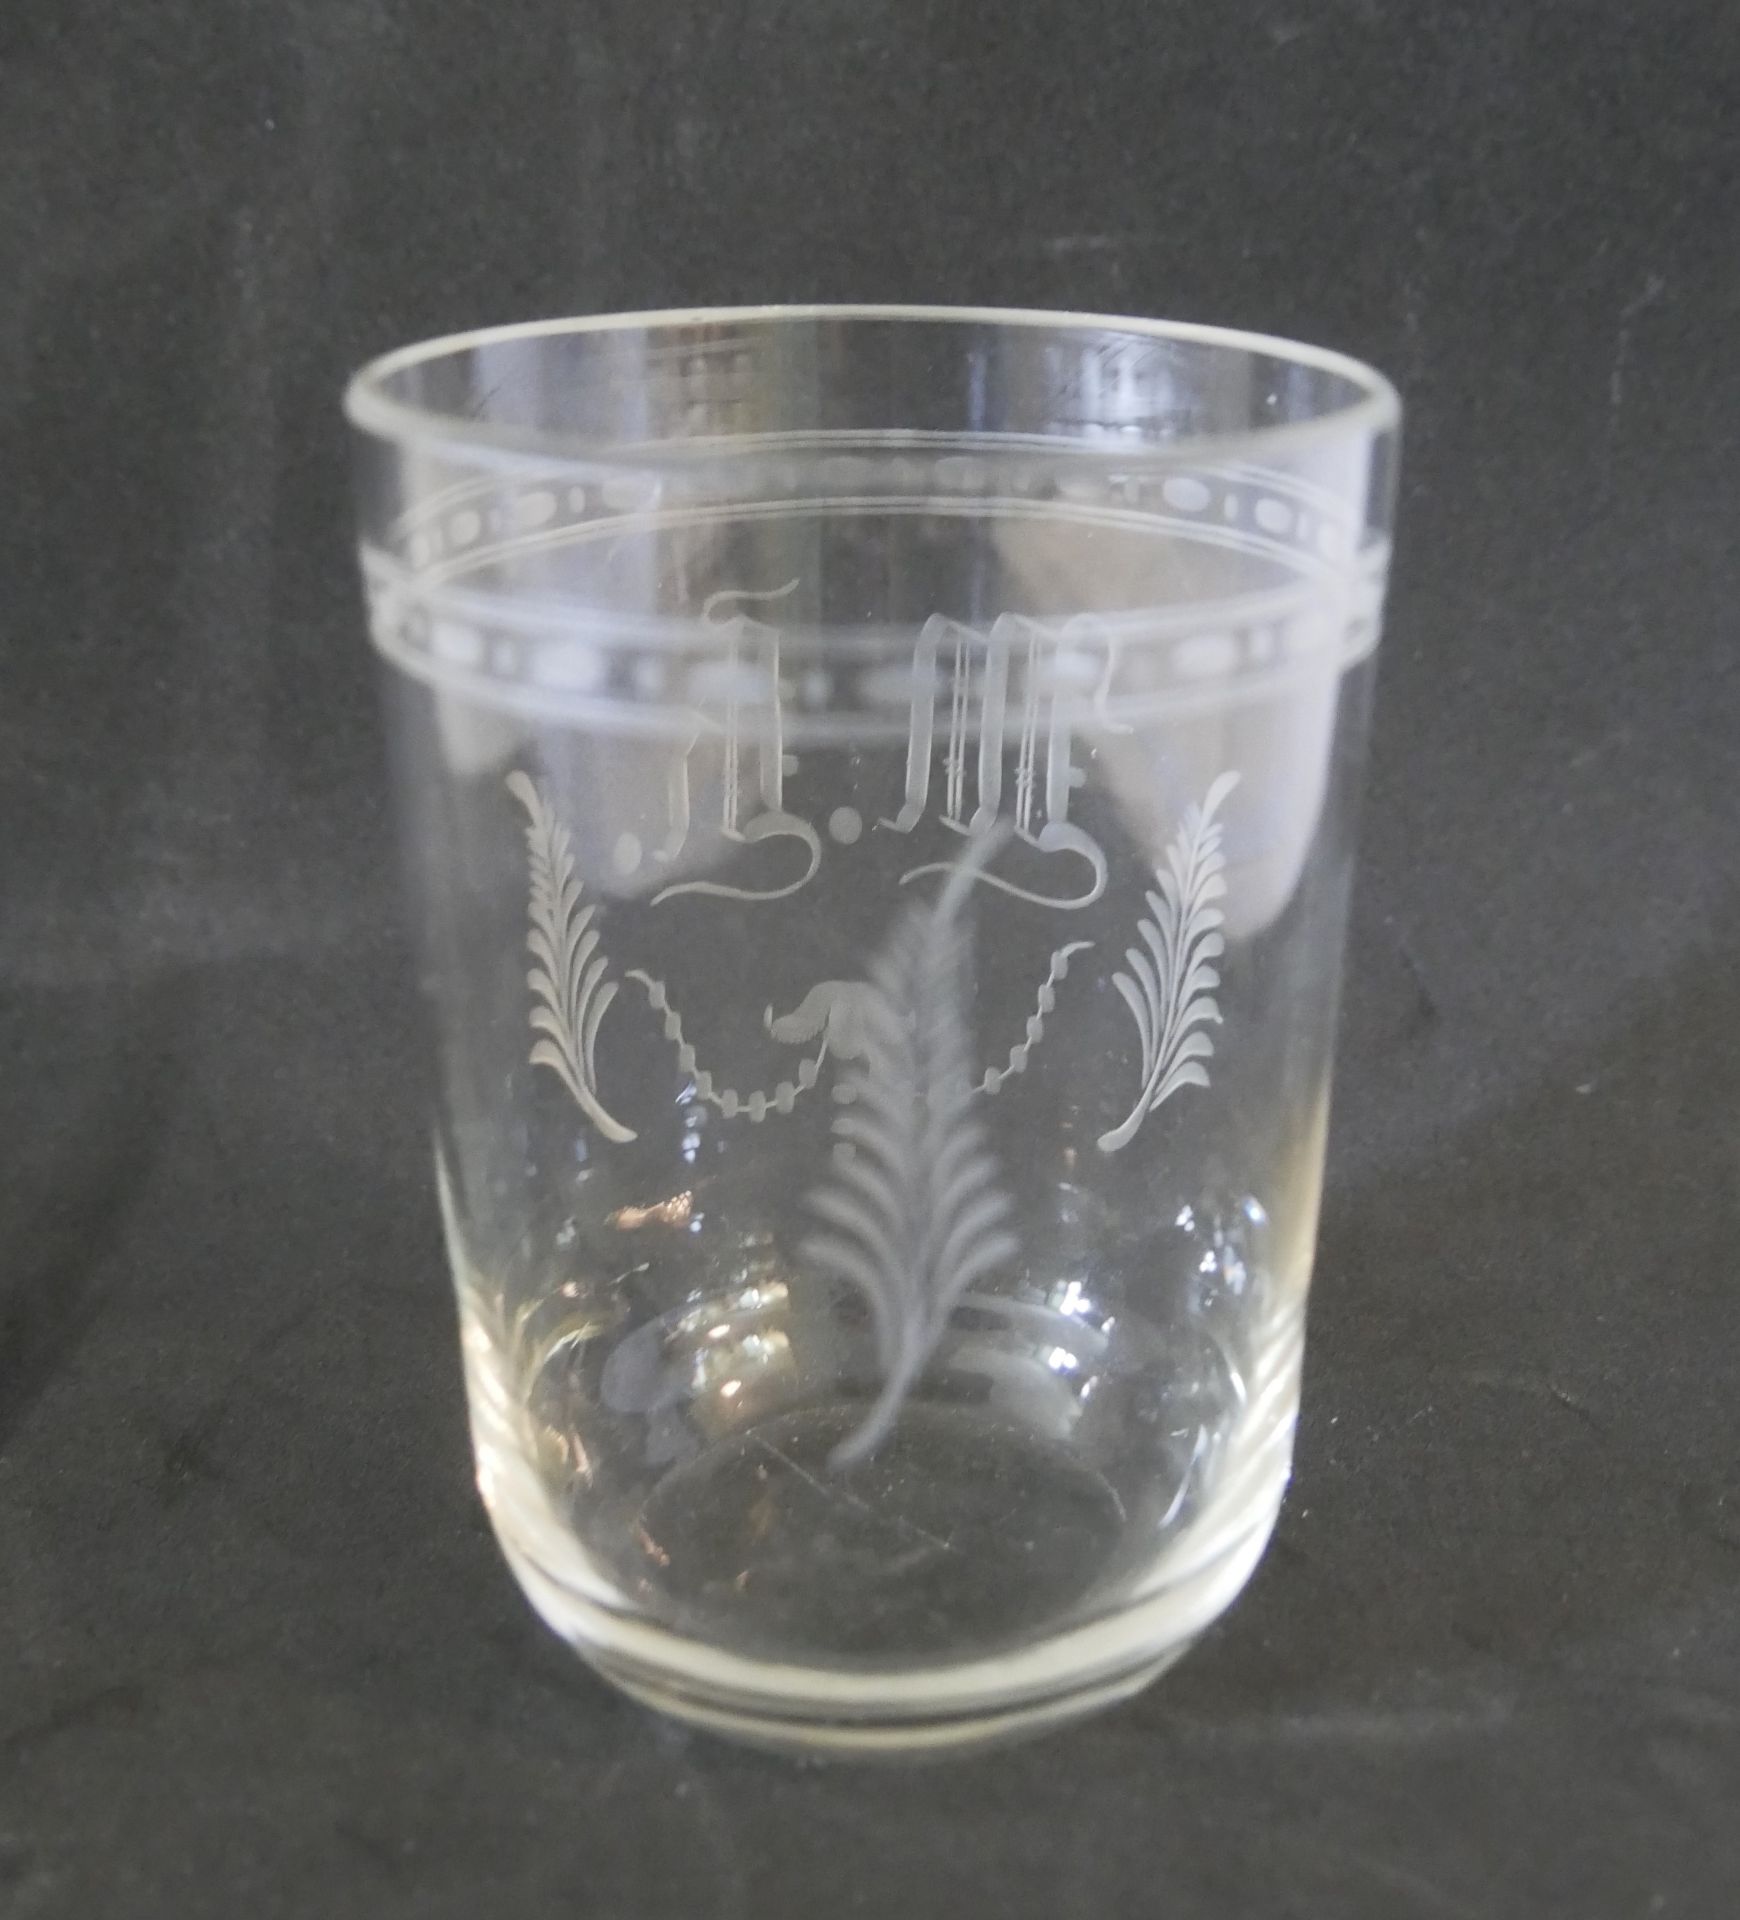 Jugendstil Trinkglas mit Monogram und Gravur. Höhe ca. 10 cm, Durchmesser ca. 7,3 cm - Bild 2 aus 2